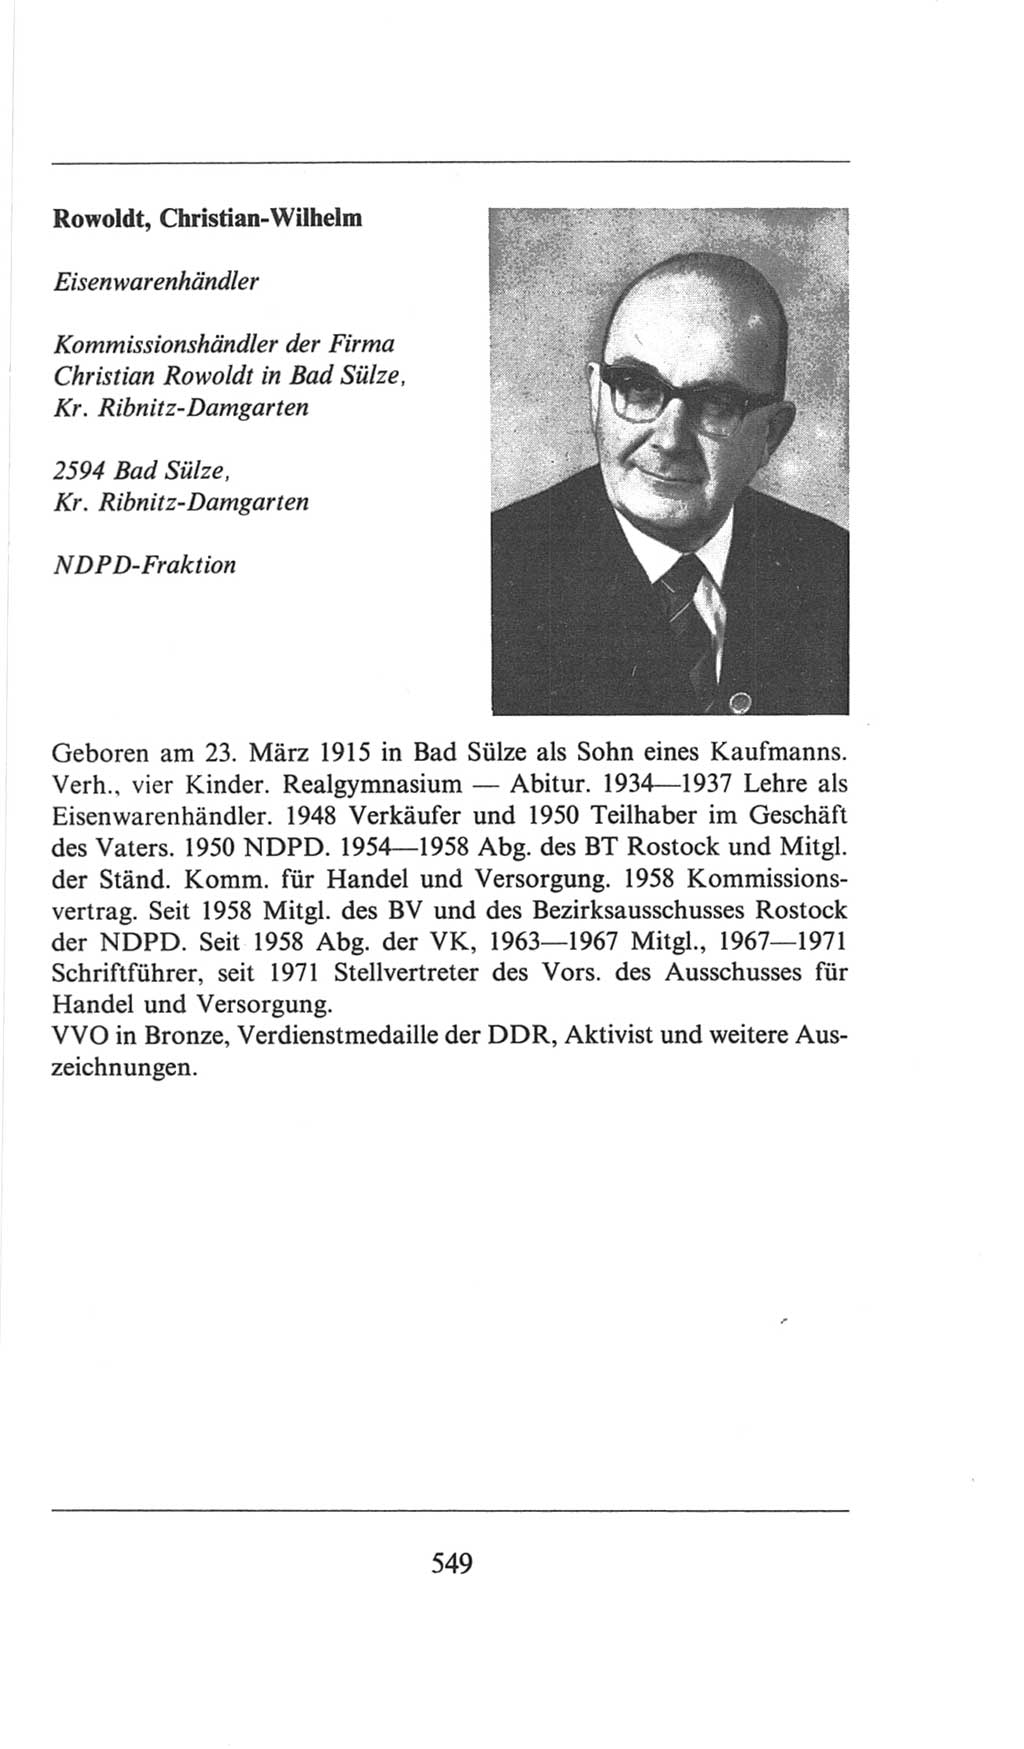 Volkskammer (VK) der Deutschen Demokratischen Republik (DDR), 6. Wahlperiode 1971-1976, Seite 549 (VK. DDR 6. WP. 1971-1976, S. 549)